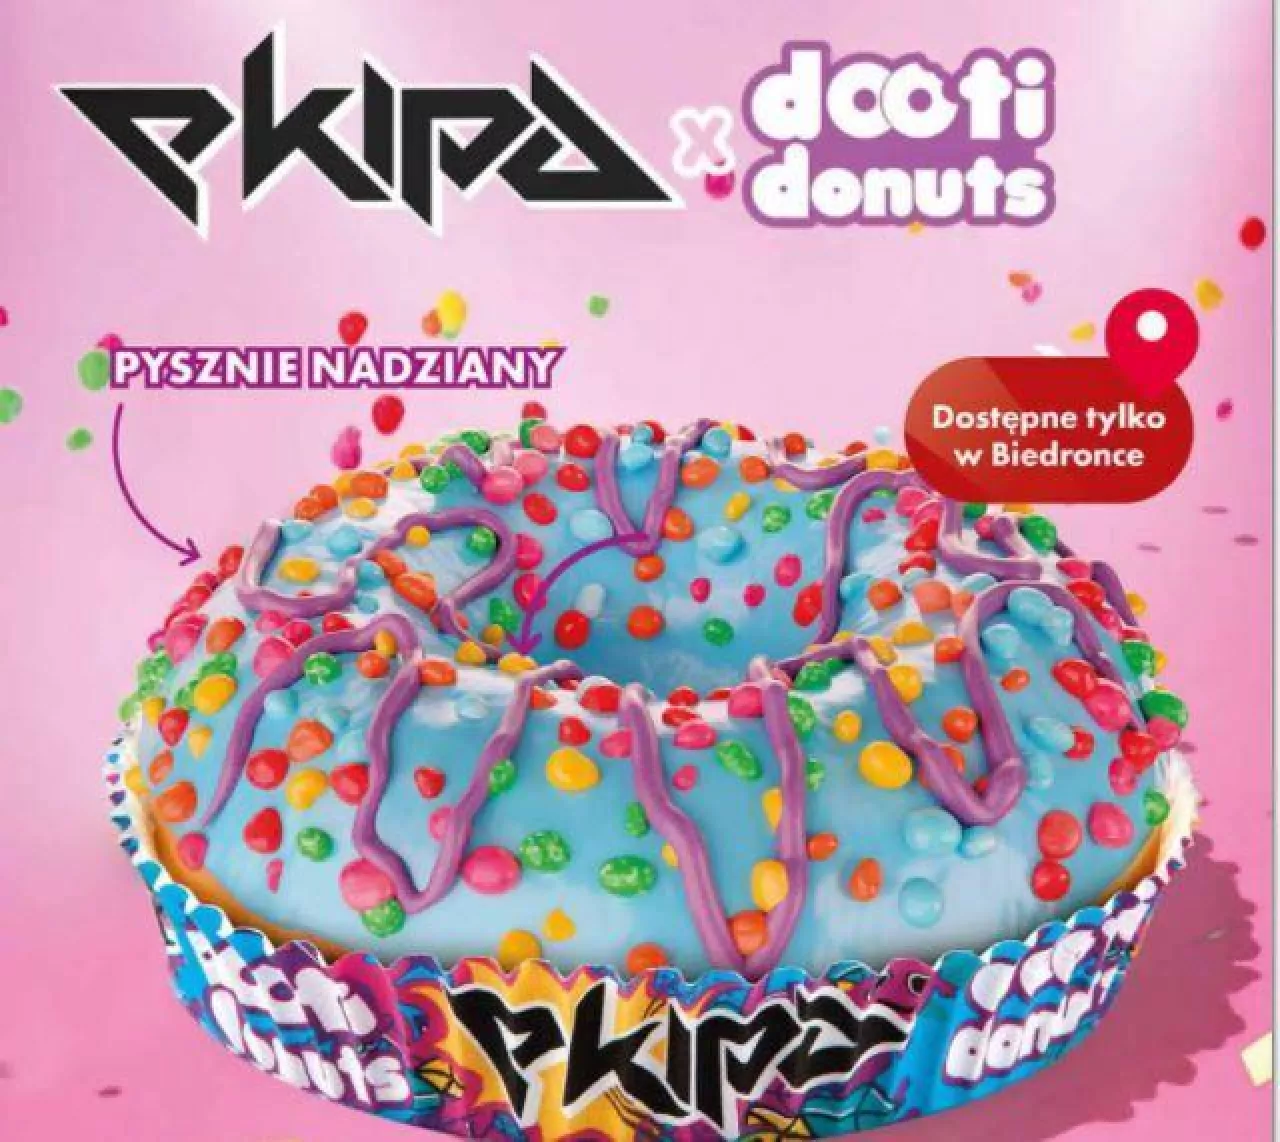 Donuty Ekipy Friza w sklepach Biedronka (fragment gazetki) (Biedronka)